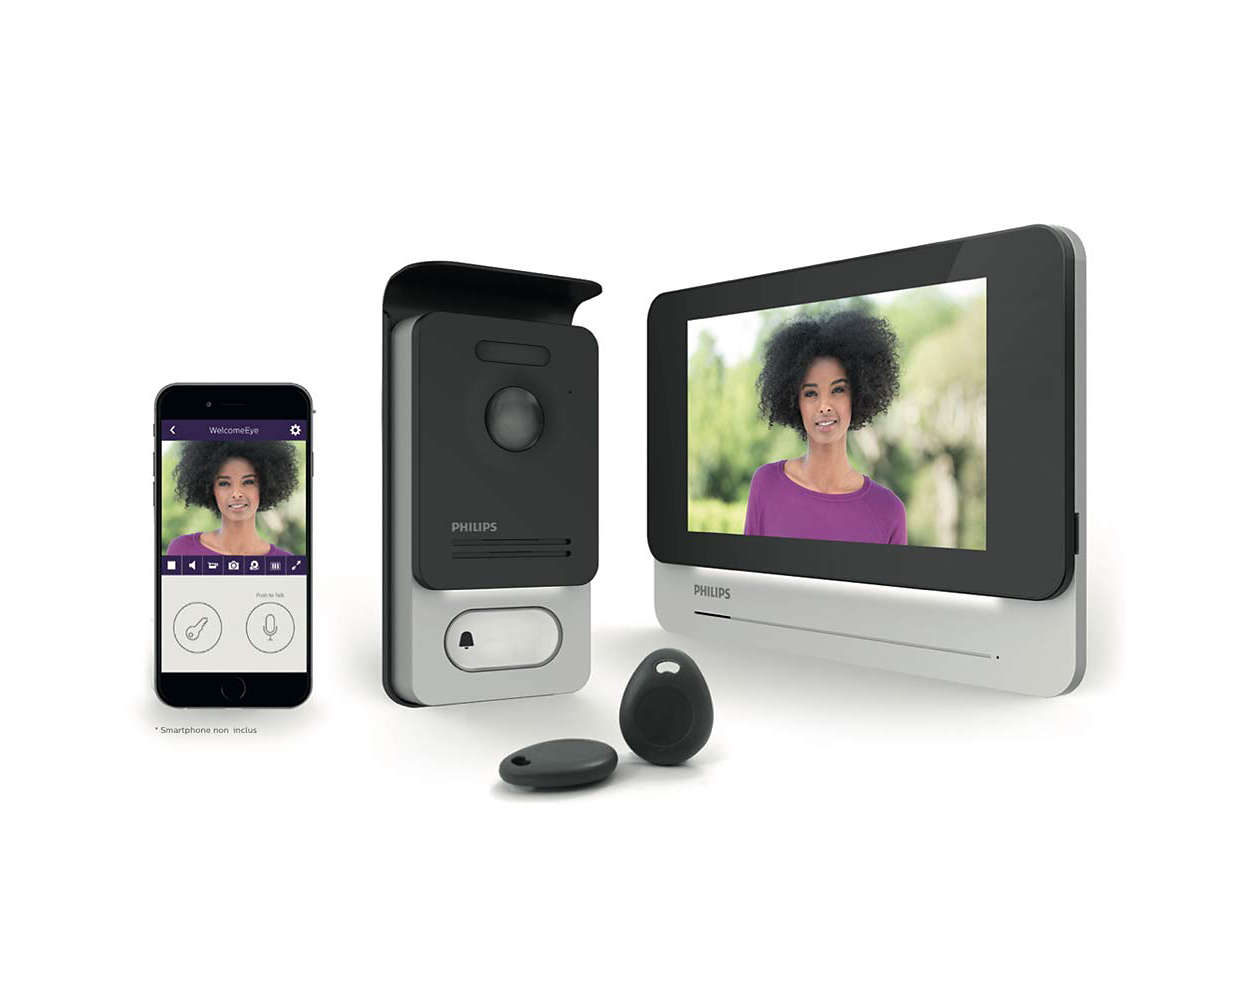 Wideodomofon z ekranem dotykowym i łącznością internetową